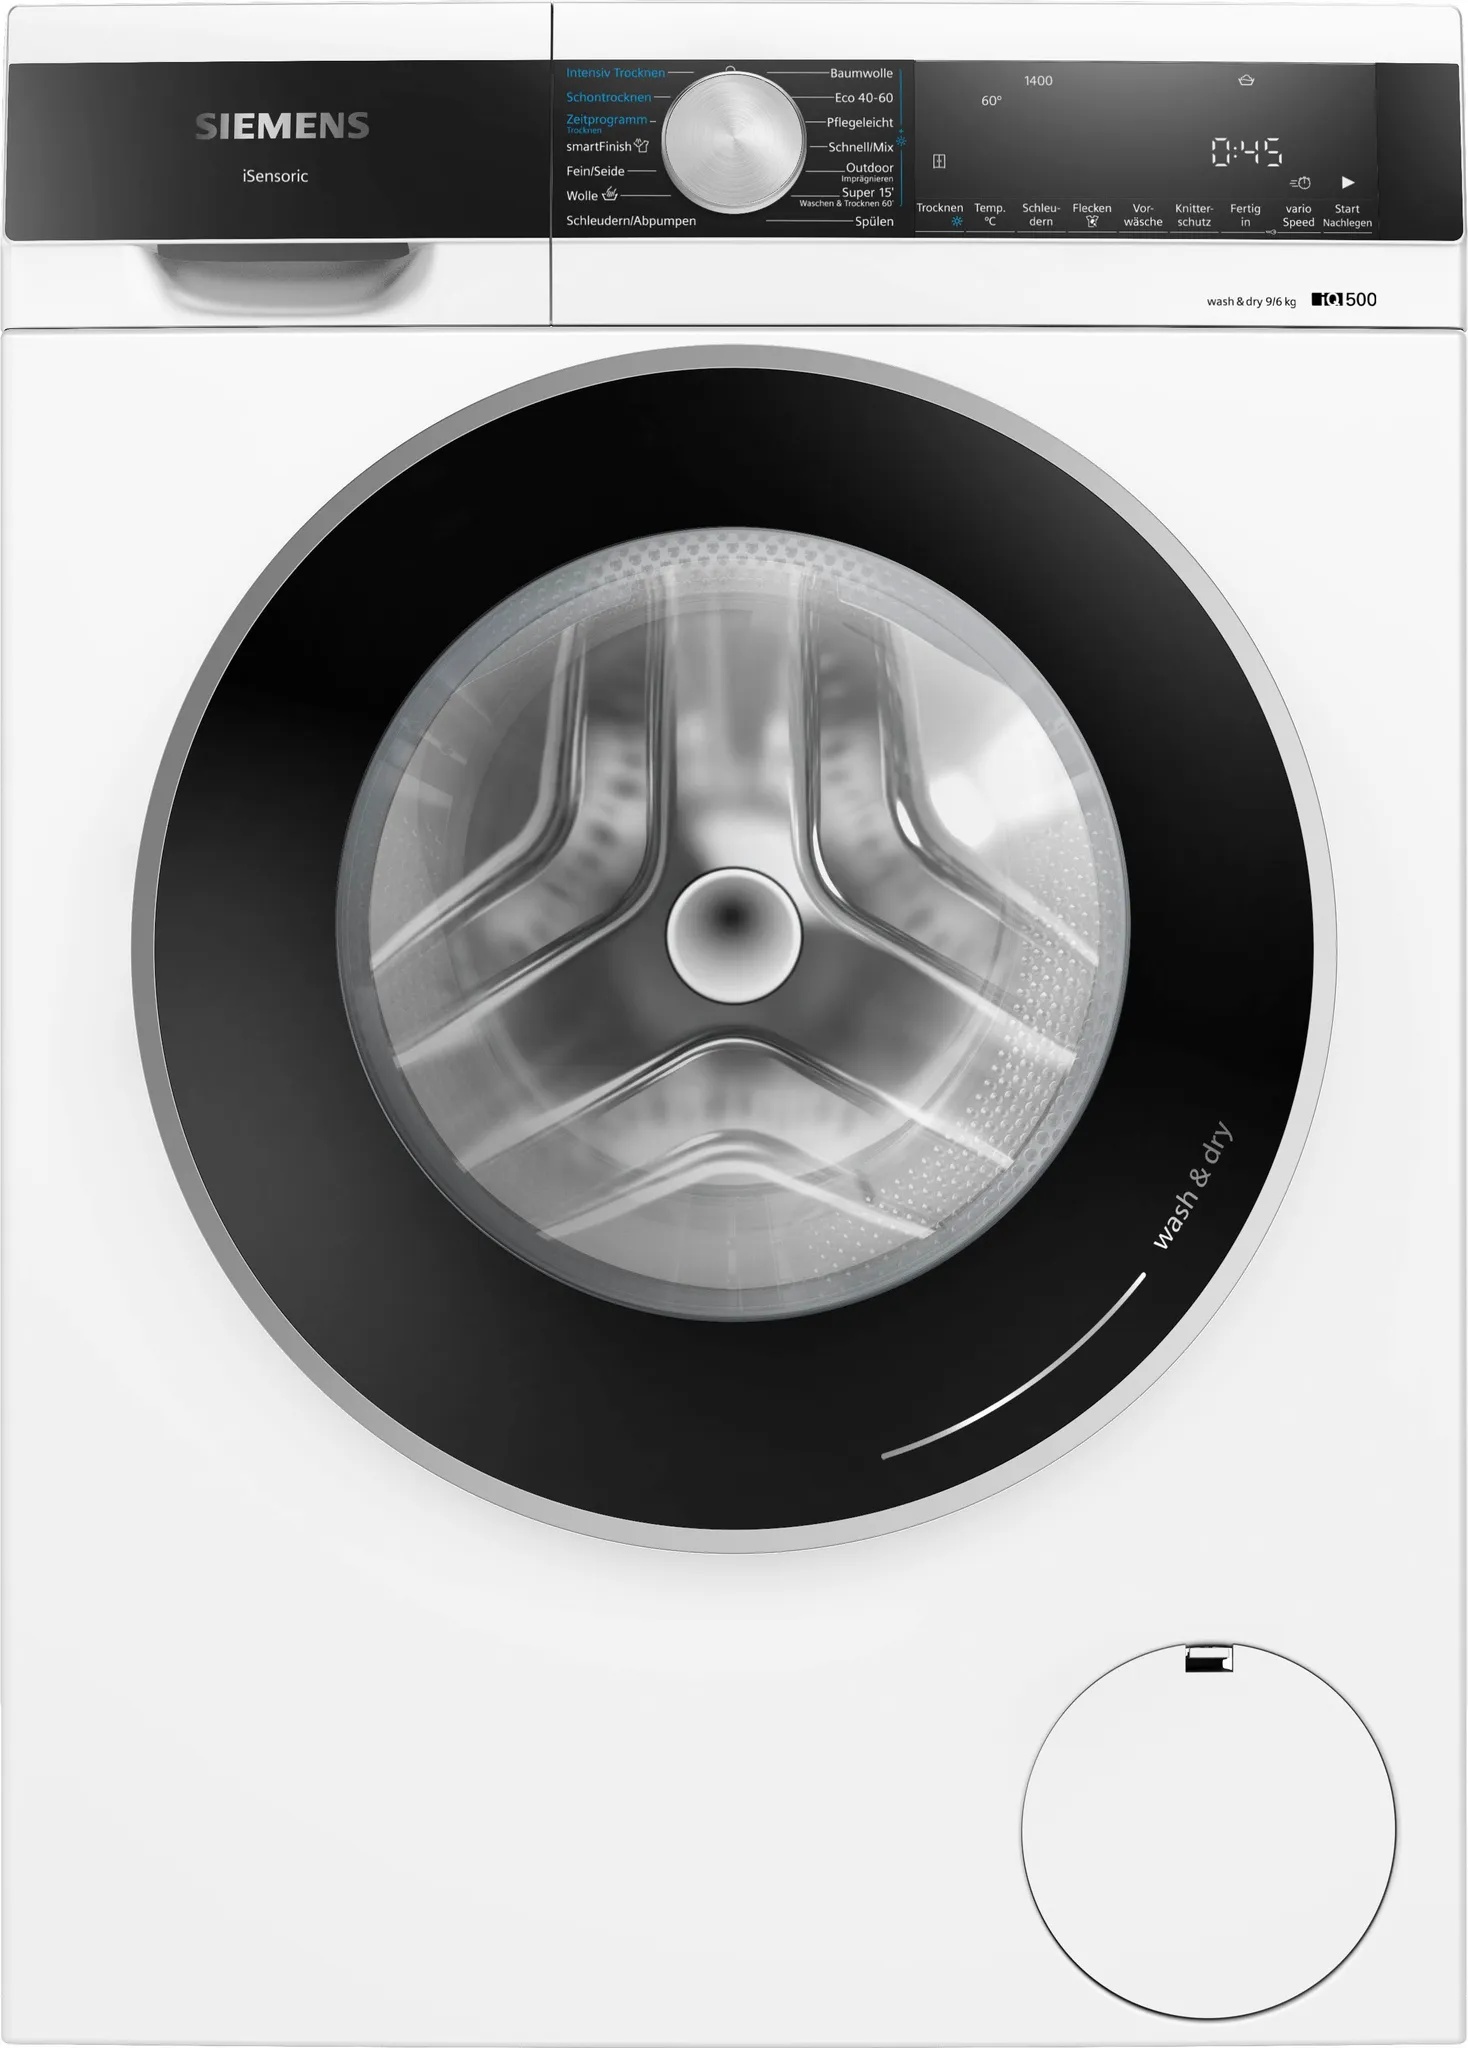 E (A bis G) SIEMENS Waschtrockner "WN44G241" schwarz-weiß (weiß, schwarz) Waschtrockner